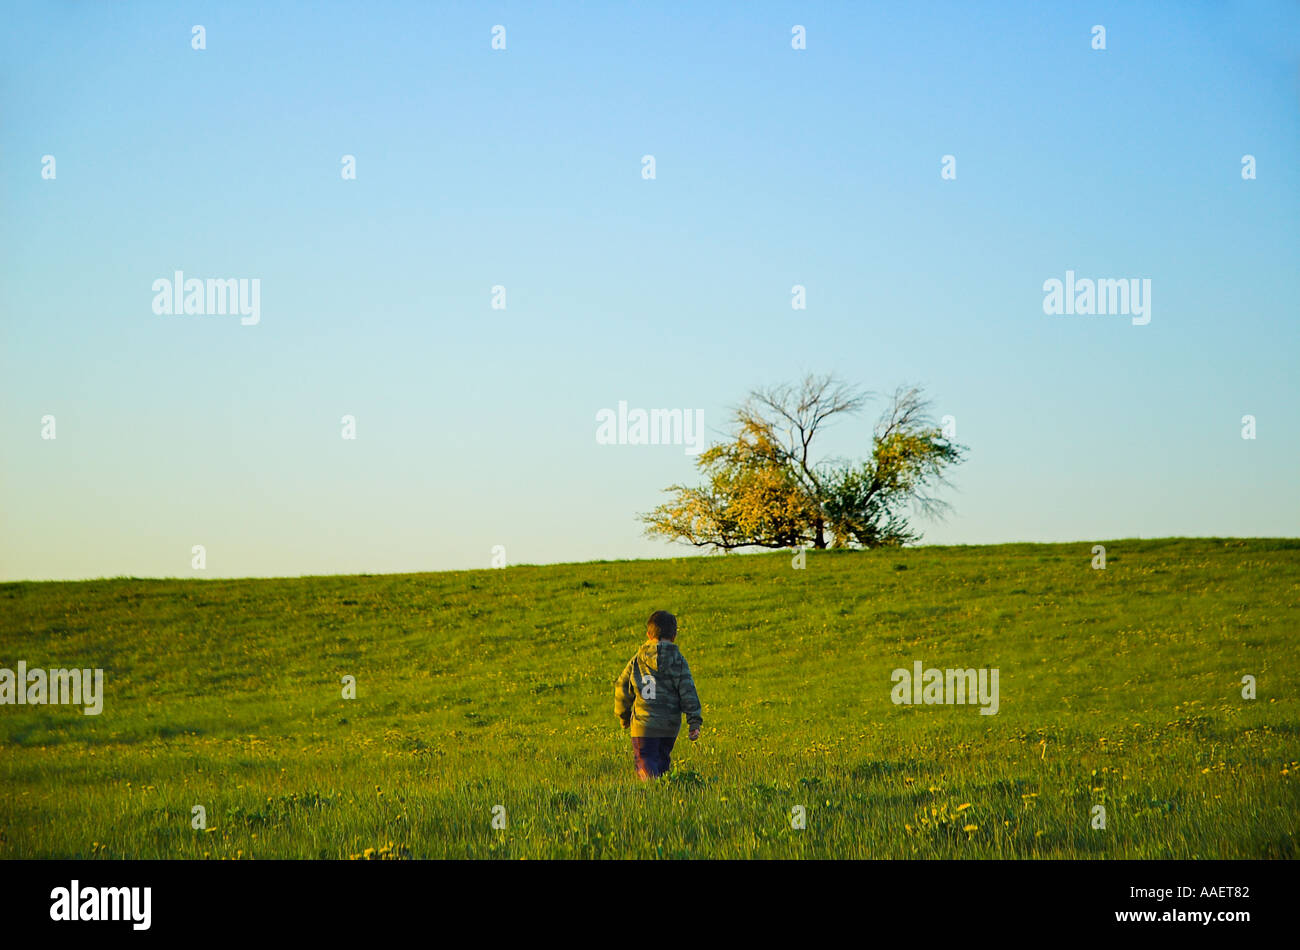 Un giovane ragazzo camminare su per una collina erbosa per arrivare a un Lone Tree sulla cima di una collina l'immagine è una buona immagine concettuale Foto Stock